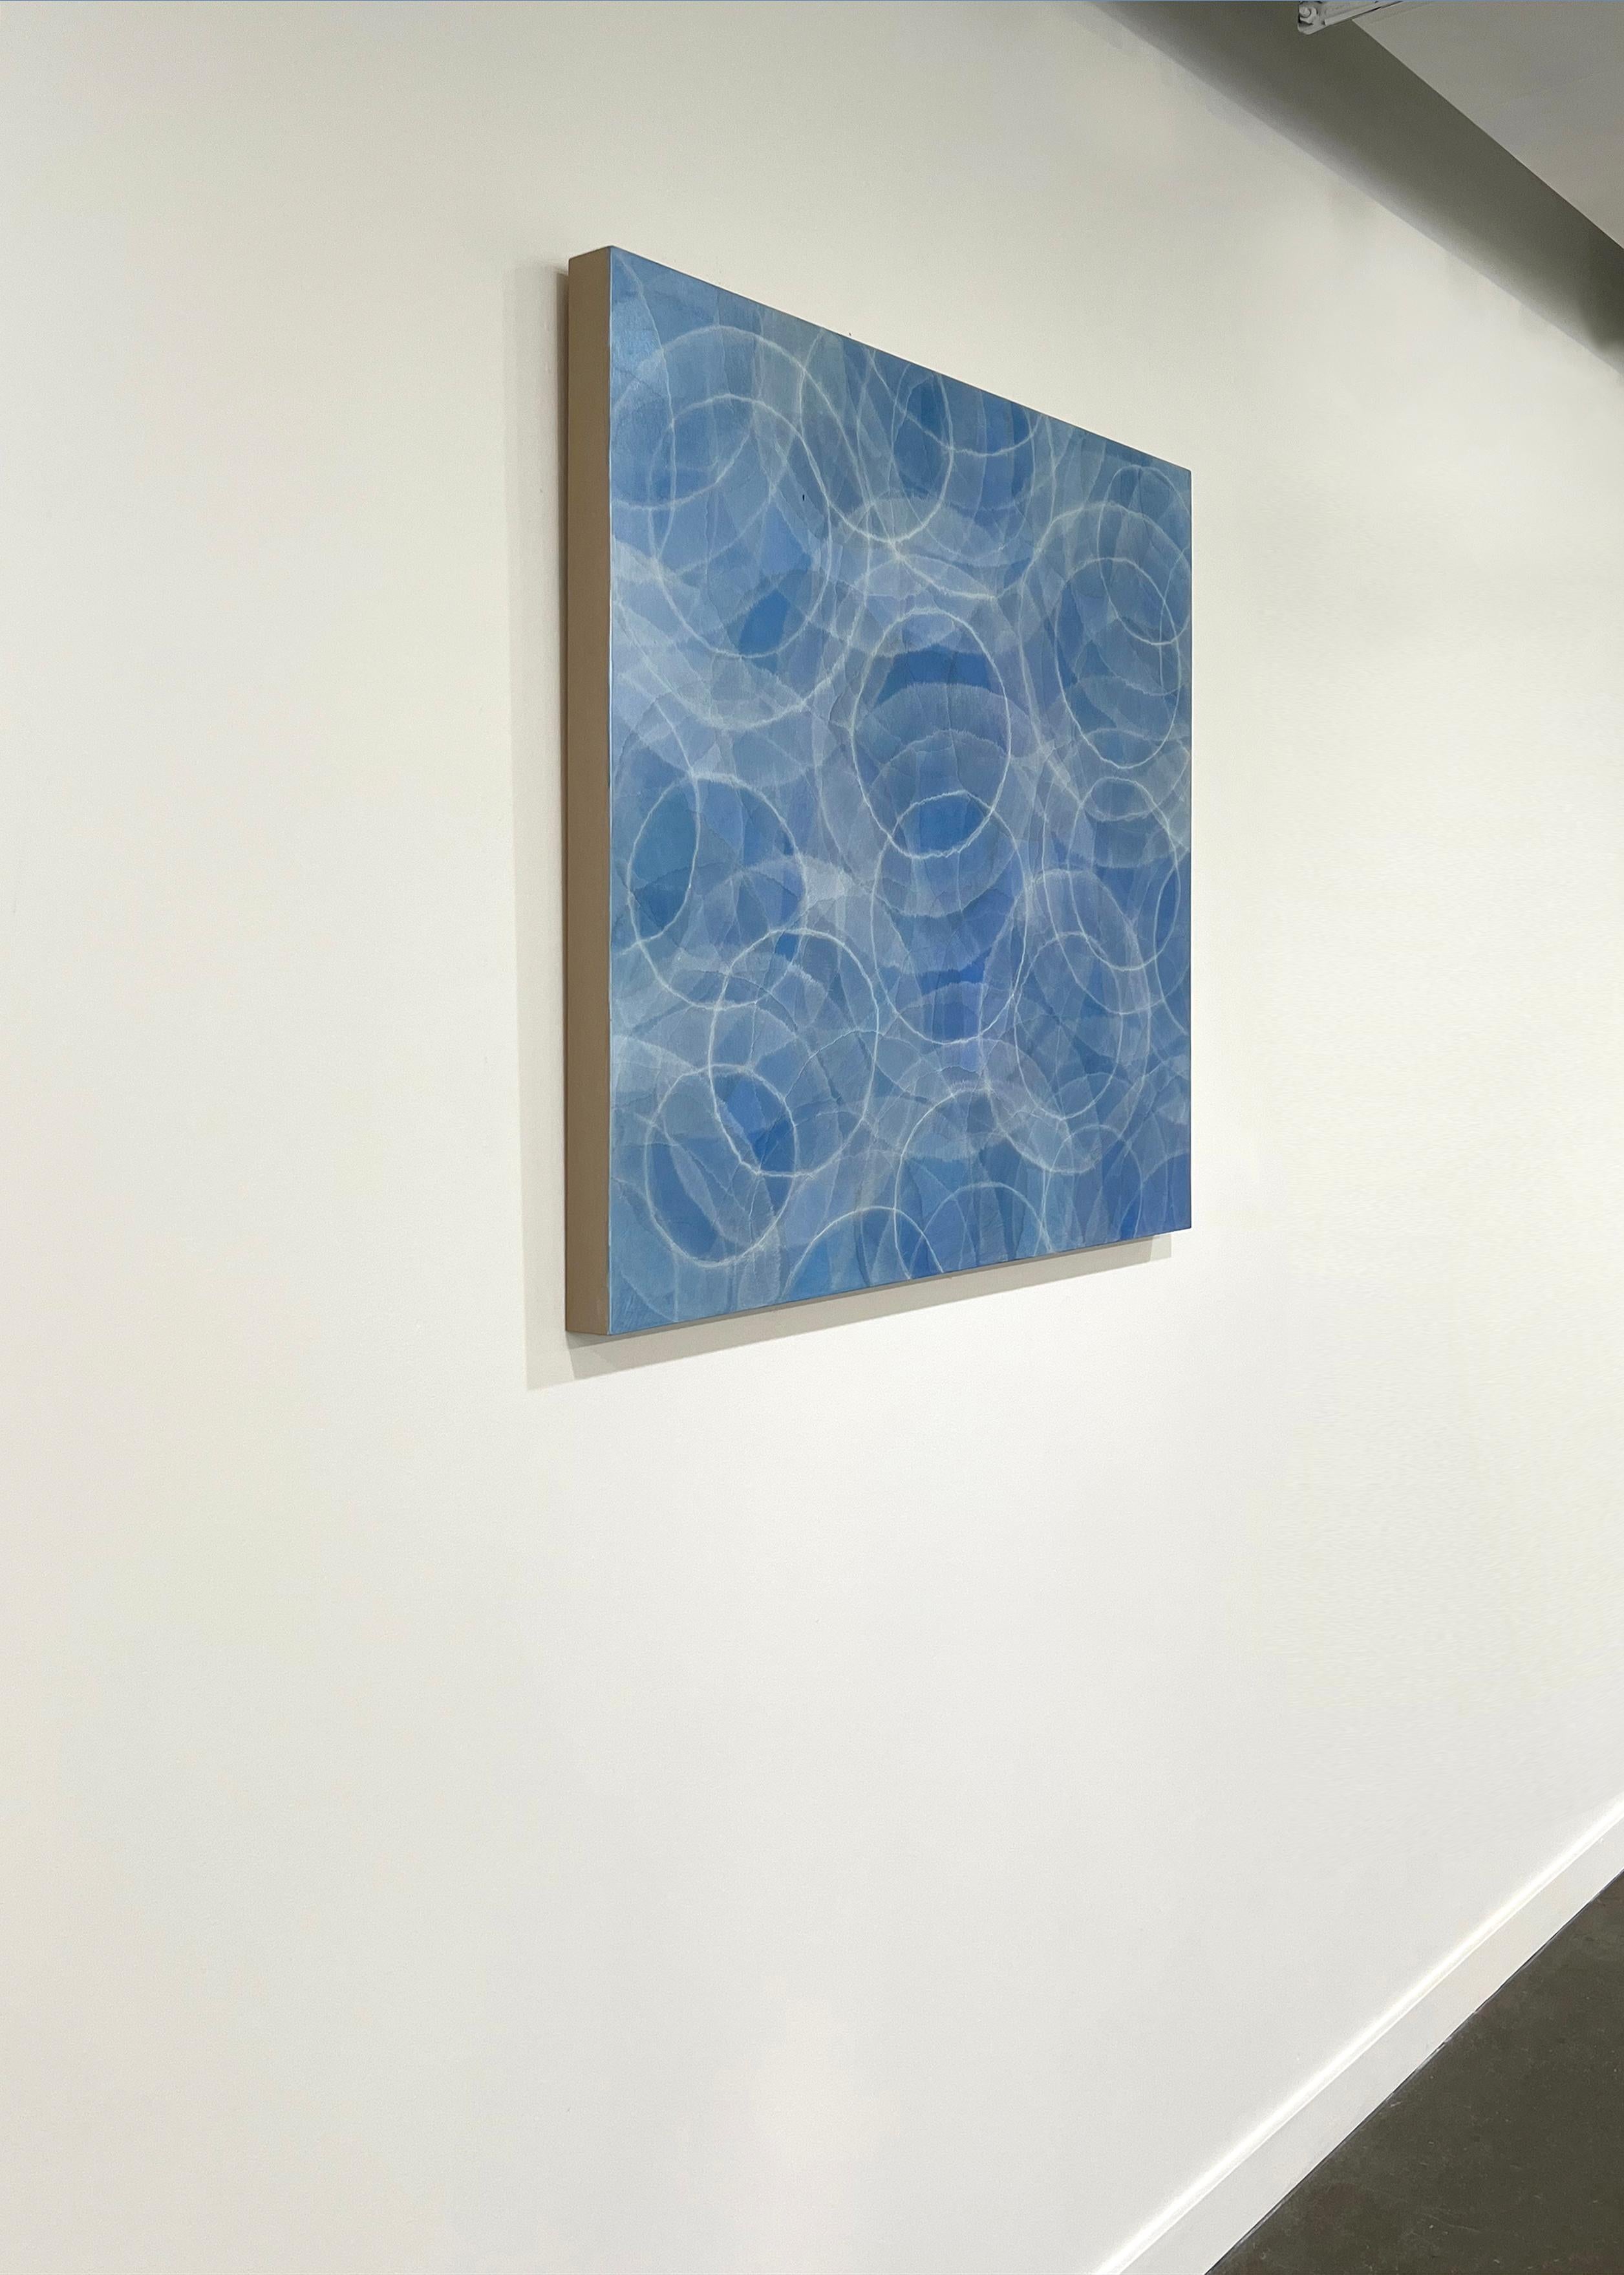 Cette peinture abstraite de Roger Mudre est réalisée avec de la peinture acrylique sur de la poudre de mica sur un panneau de bouleau bercé. Il s'agit d'une palette de bleu clair et d'argent, avec les contours légers de cercles qui semblent presque